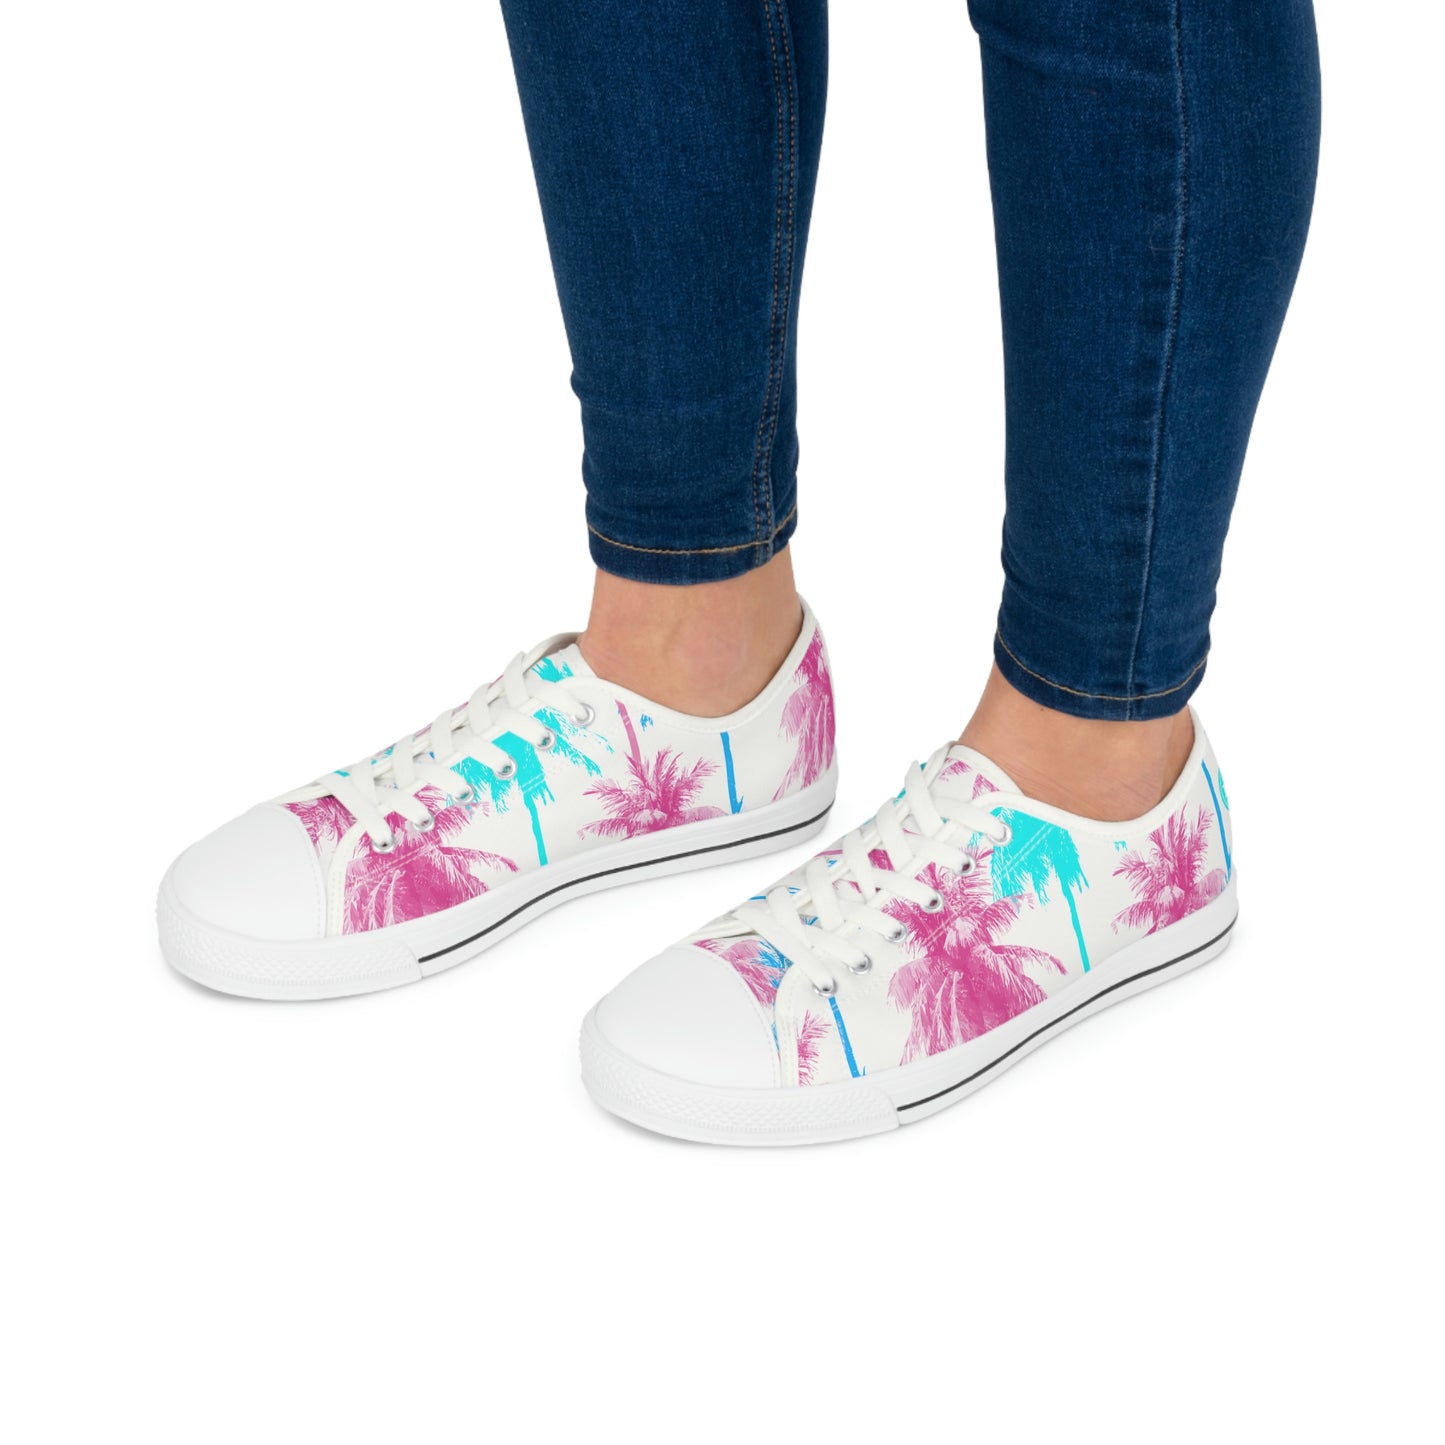 Pismo – Women's Low Top Sneakers